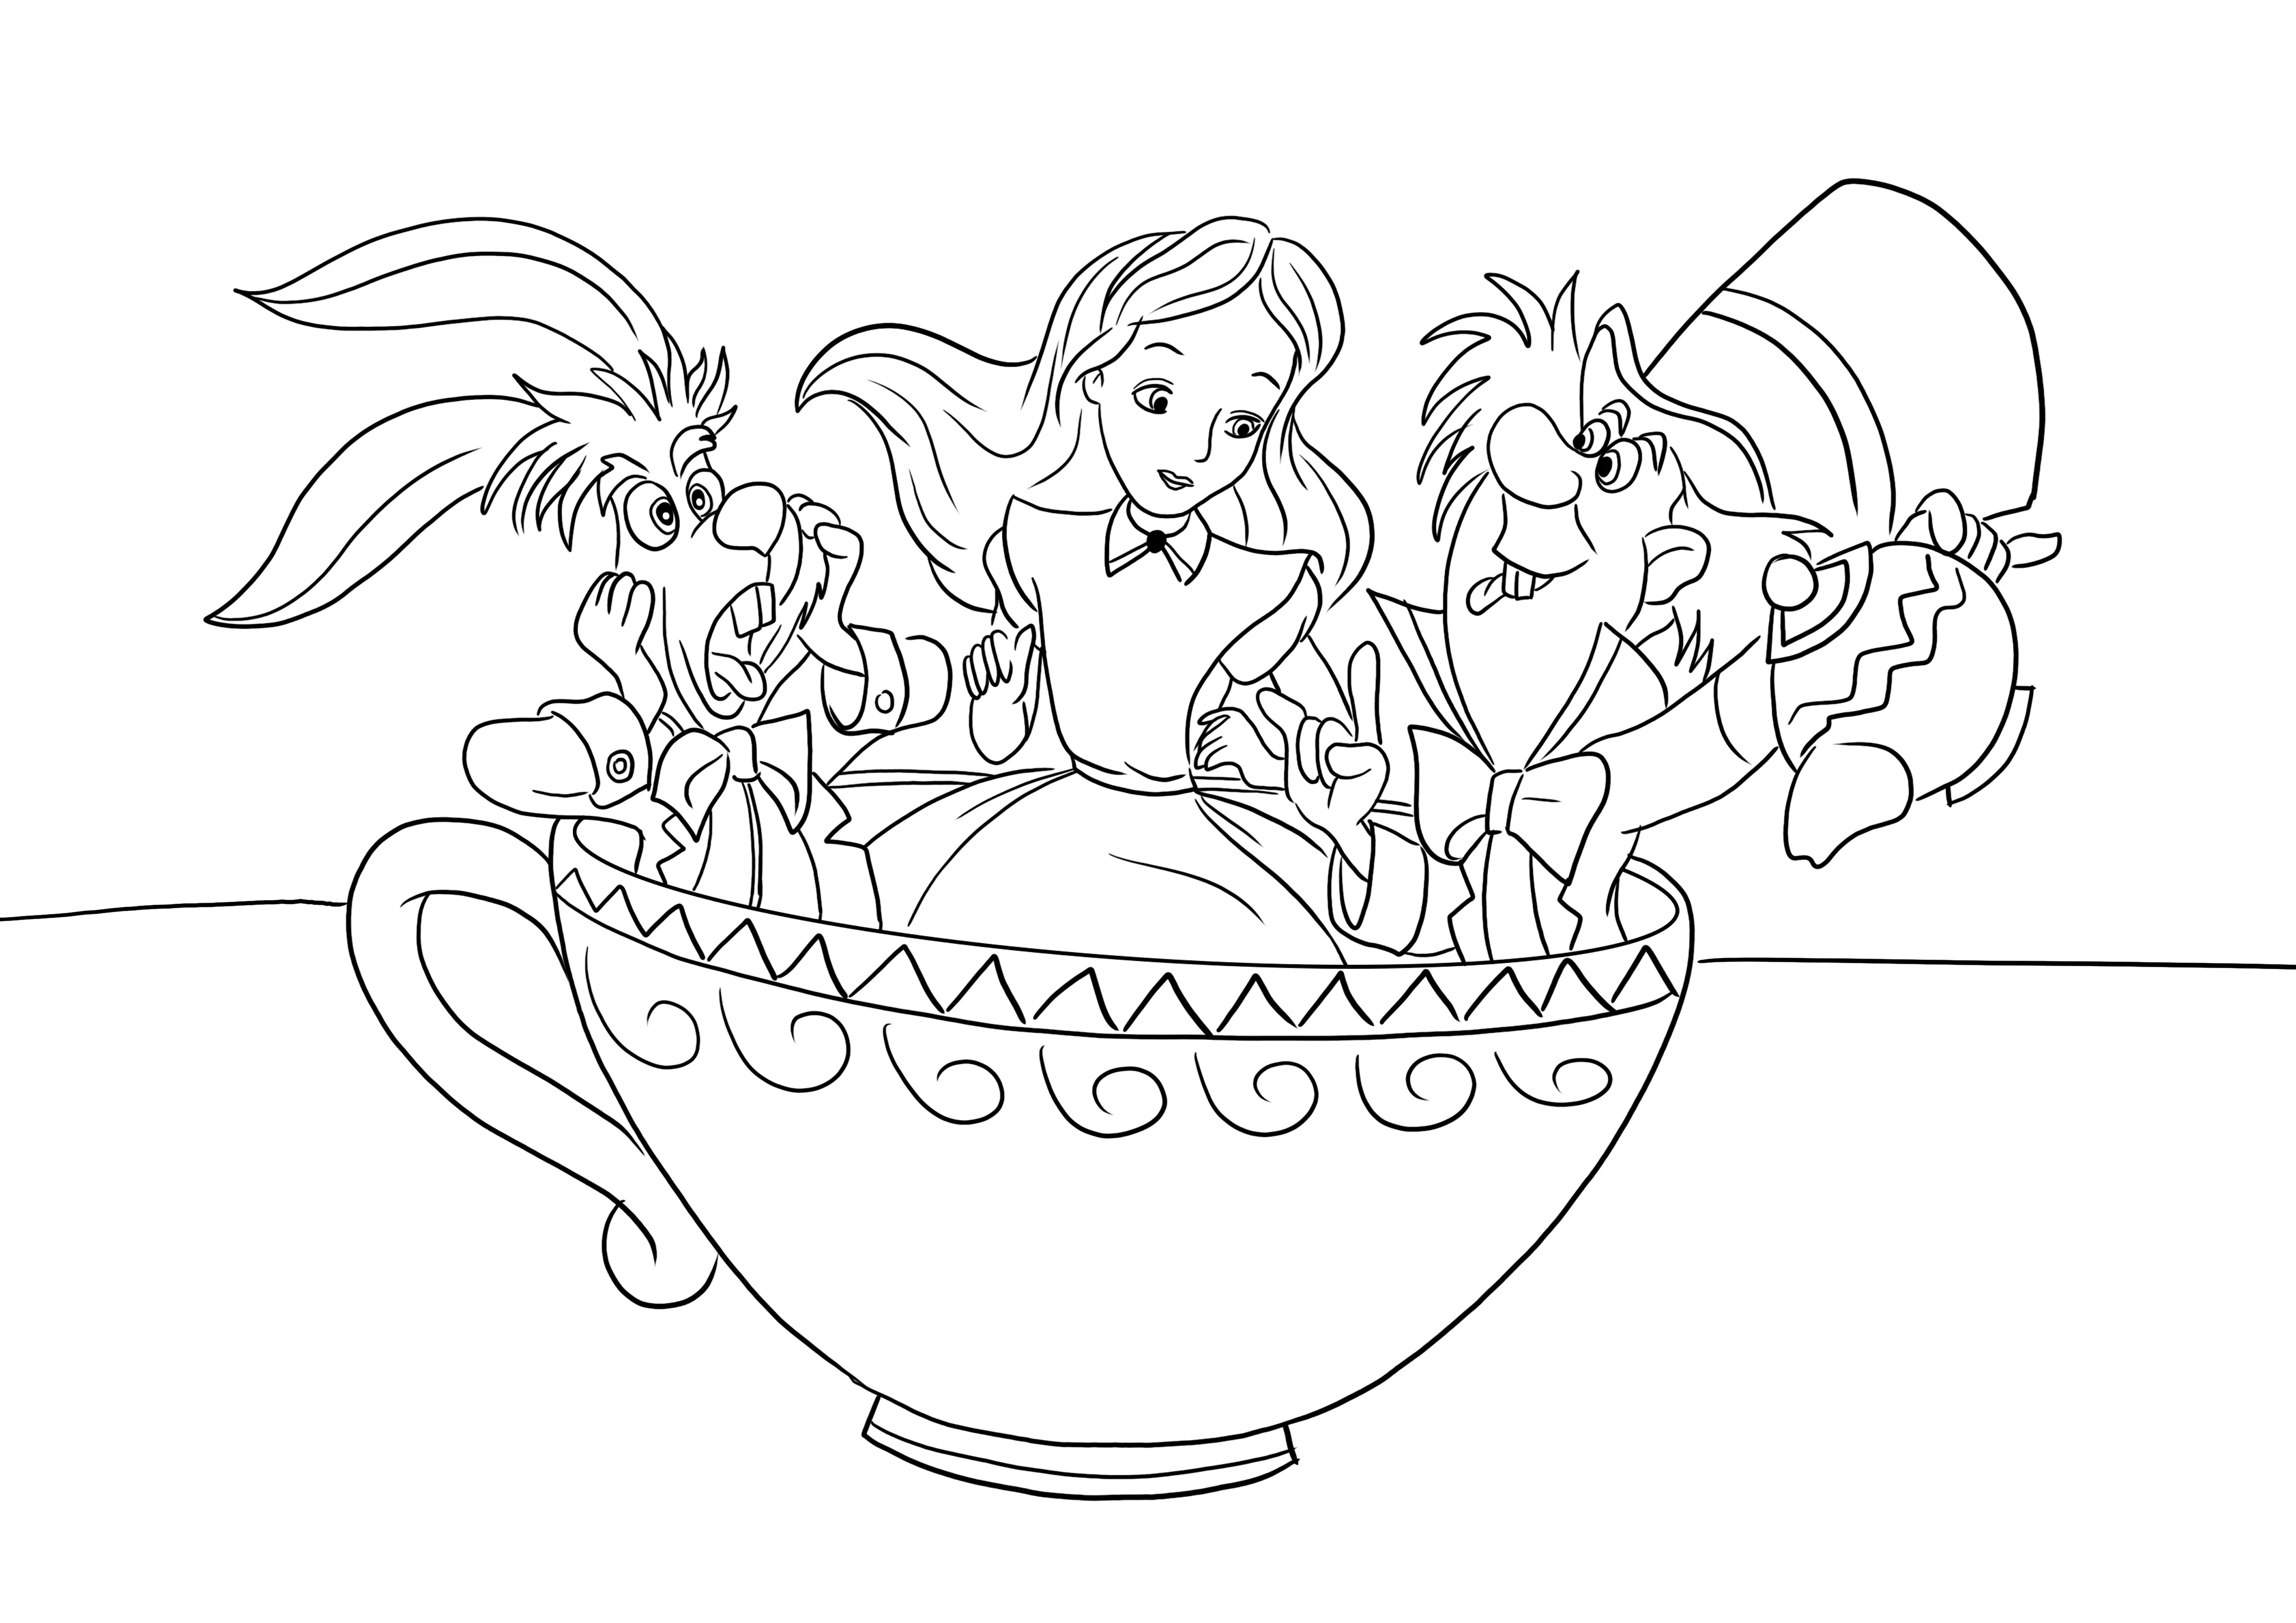 Pălărier nebun-Alice-Iepure într-o ceașcă de ceai imagine de colorat gratuit pentru descărcare sau imprimare